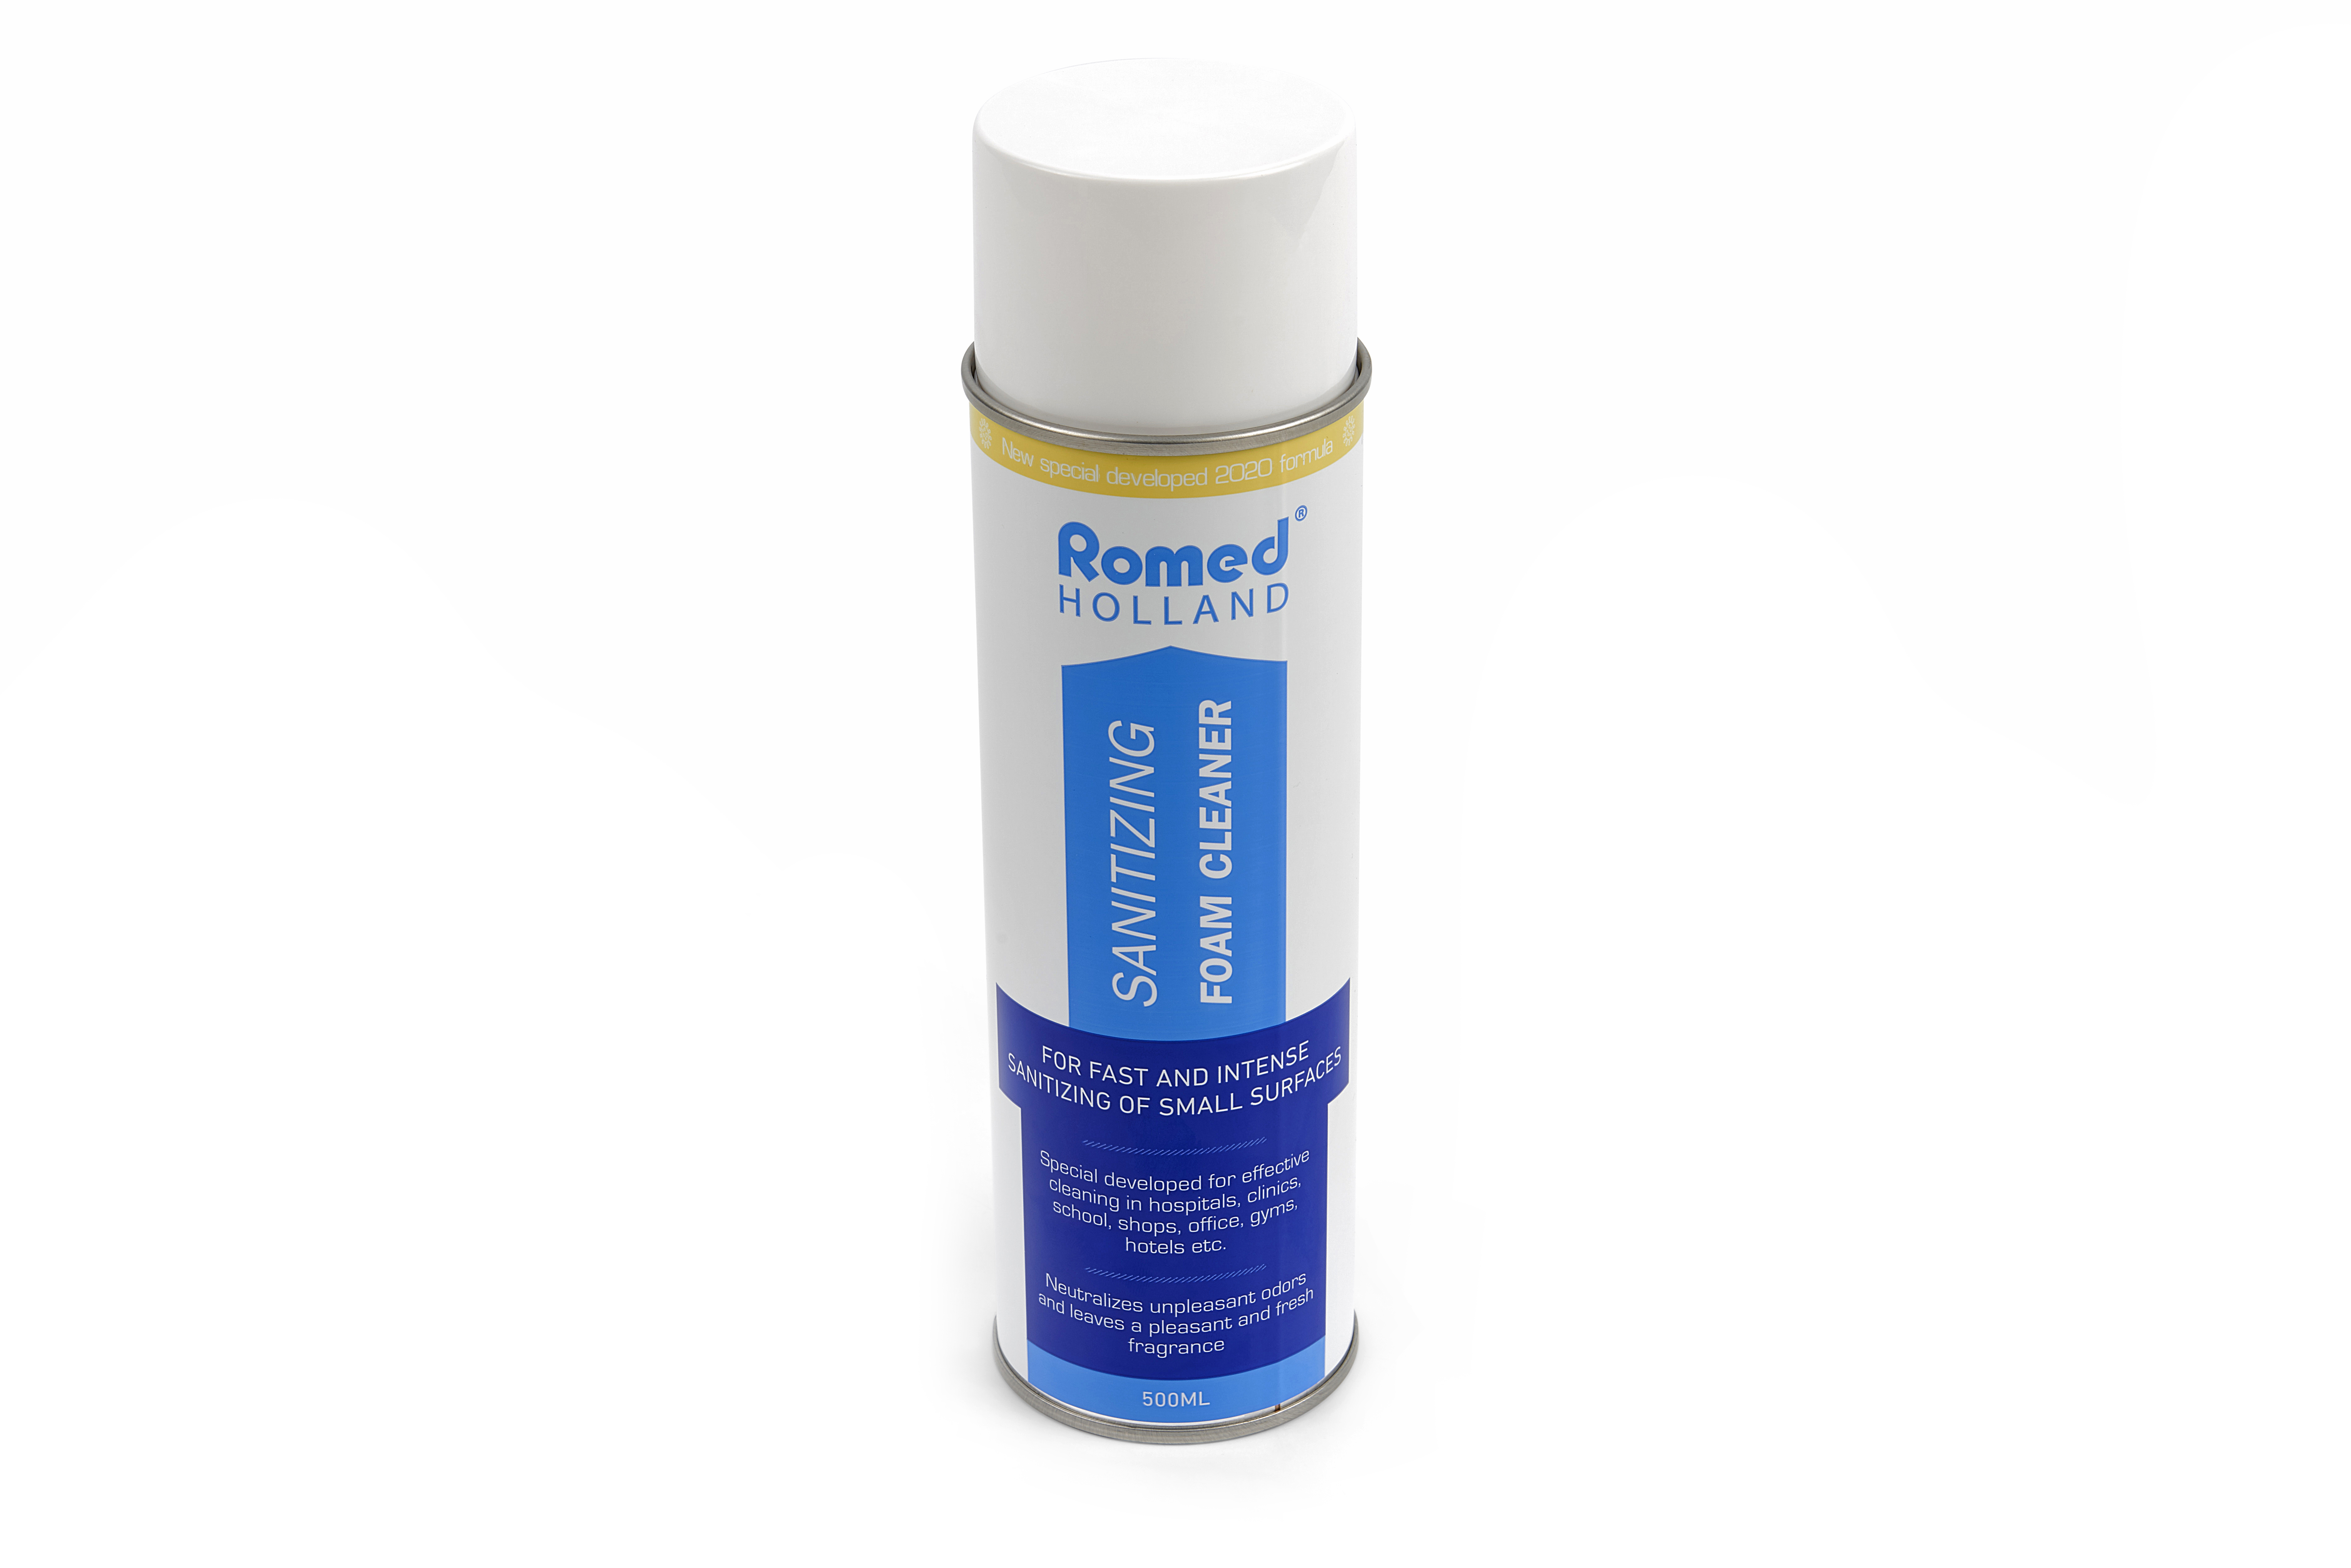 COV19-FOAM Espuma desinfetante Romed, para desinfeção rápida e intensa de pequenas superfícies. 12 aerossóis, 500 ml, por caixa de envio.